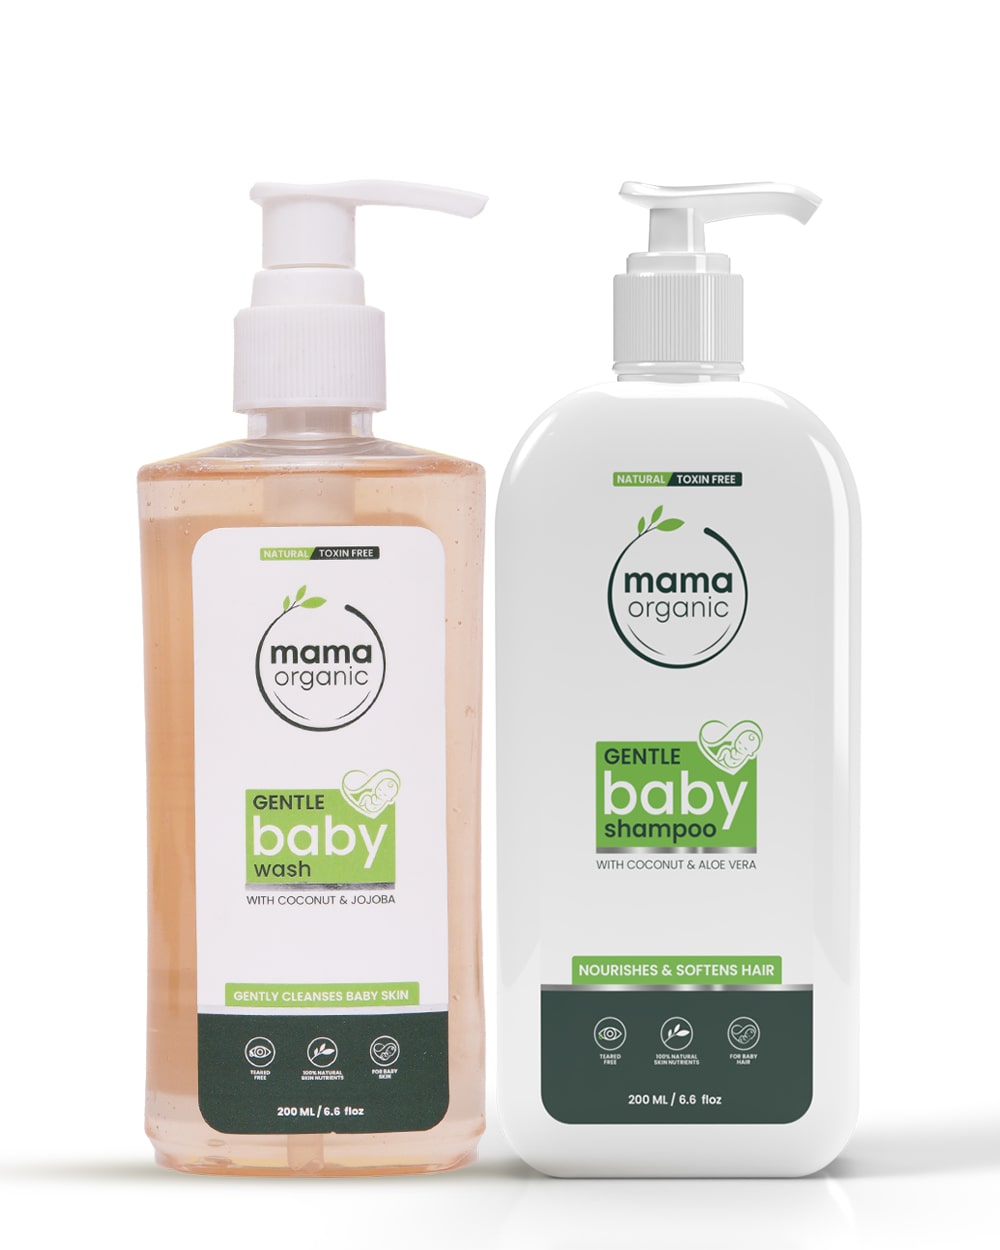 Gentle Baby Shampoo, Baby Wash Combo 200ml